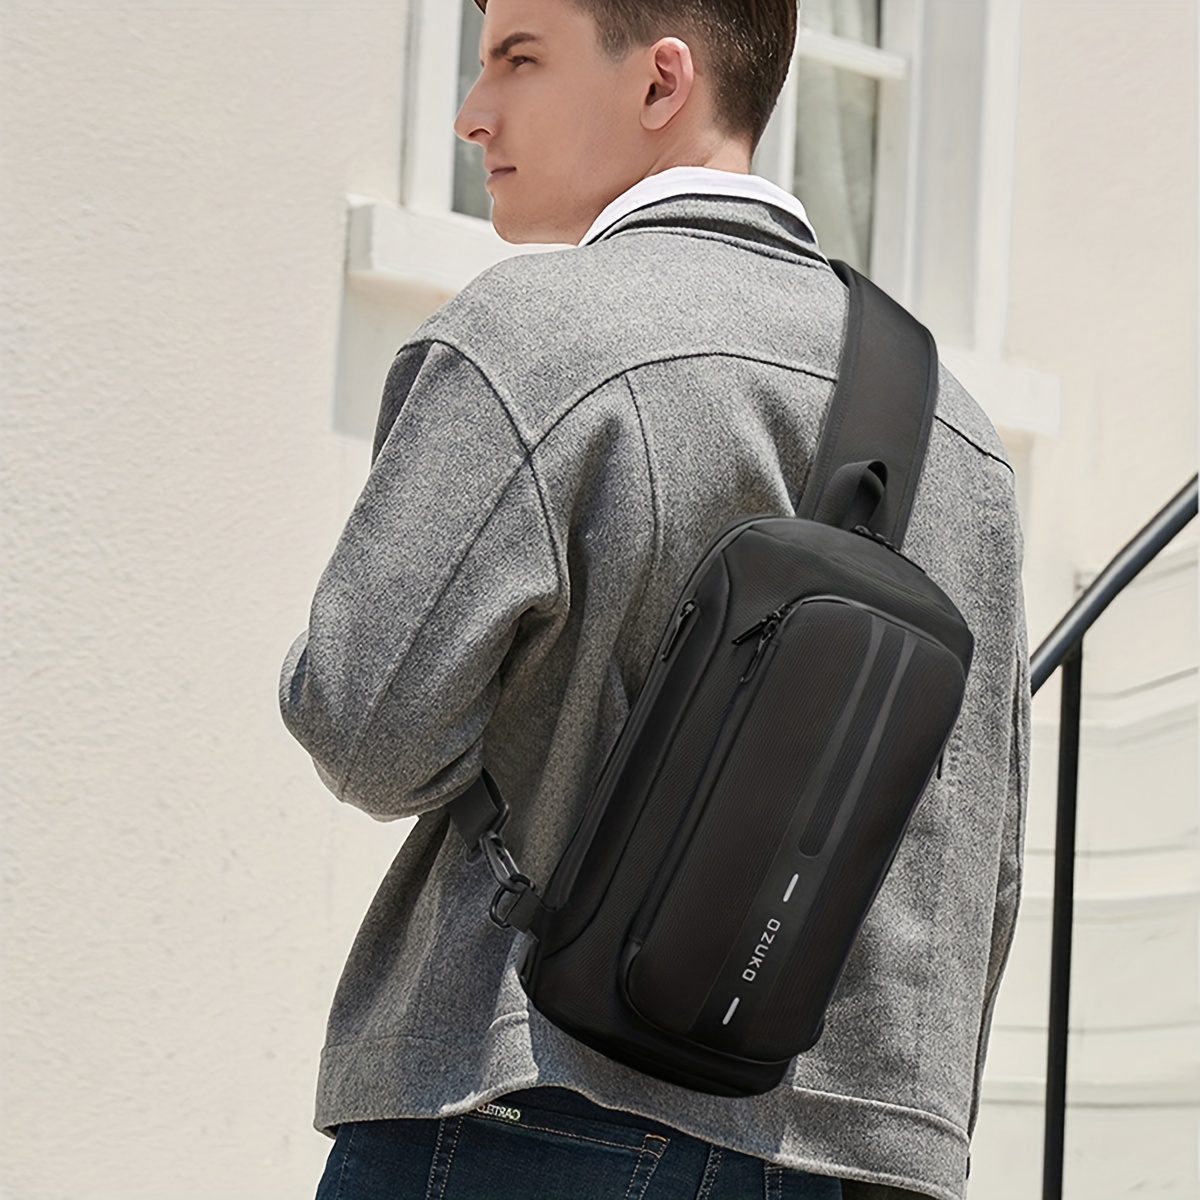 1kom OZUKO muška protuprovalna torba za nošenje preko ramena s USB priključkom za punjenje Vodootporni ruksak protiv ogrebotina Torba za prsa velikog kapaciteta